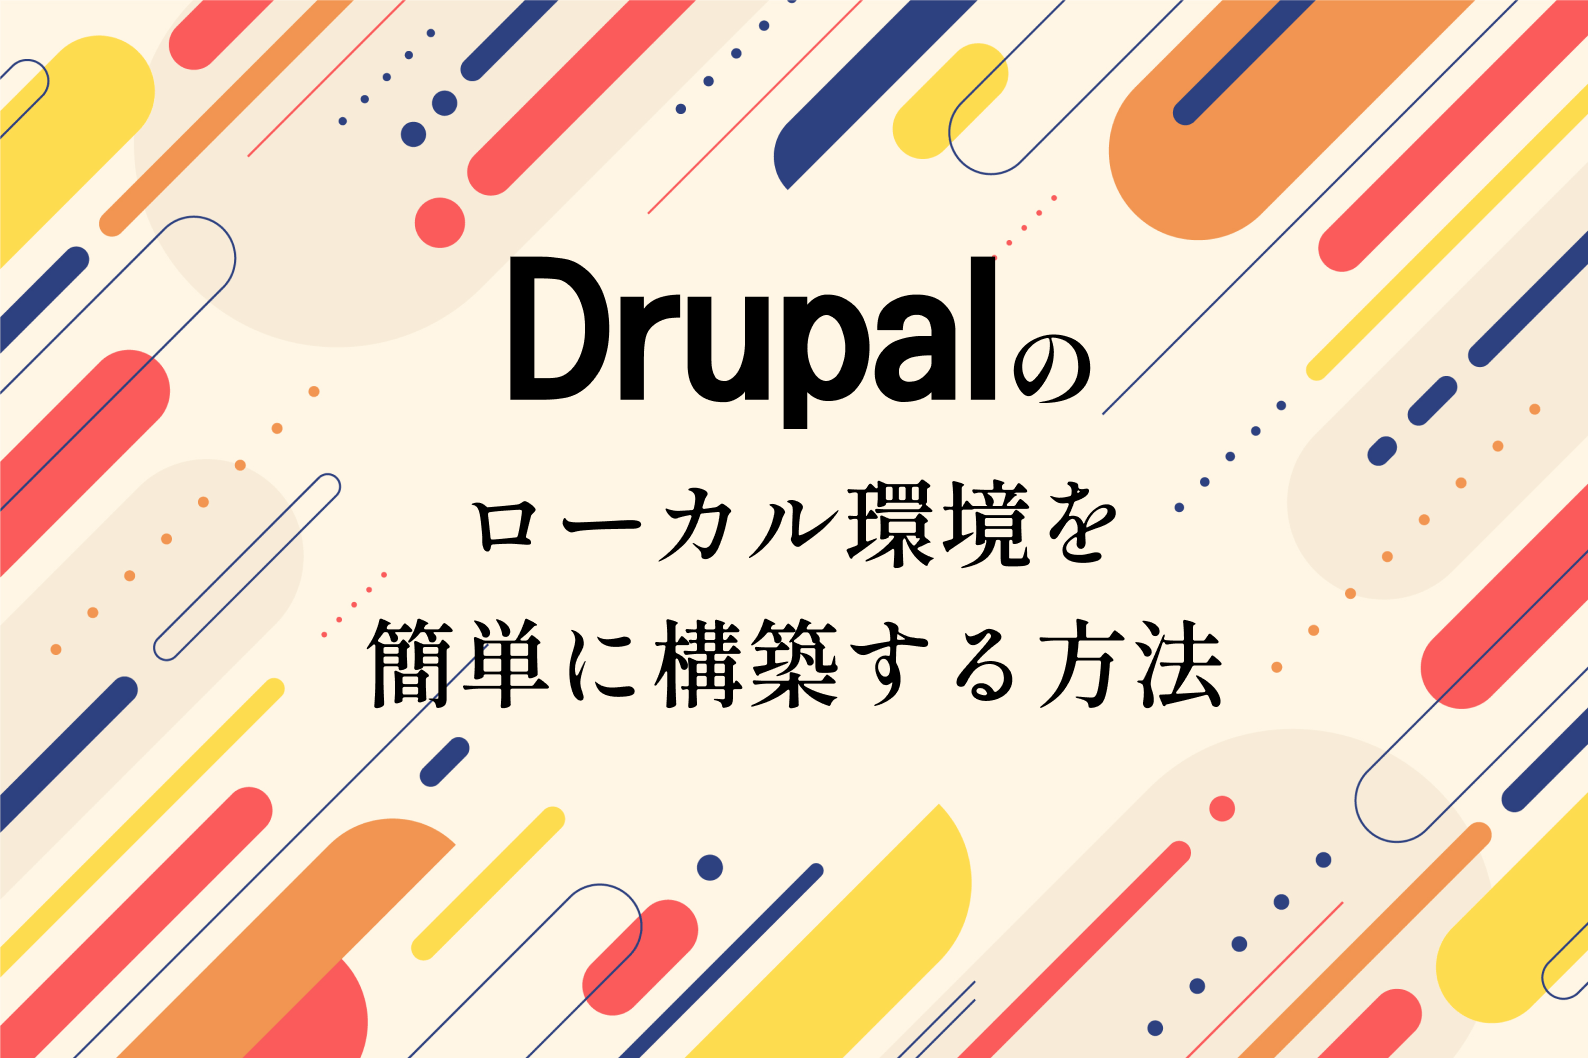 Drupalのローカル環境を簡単に構築する方法